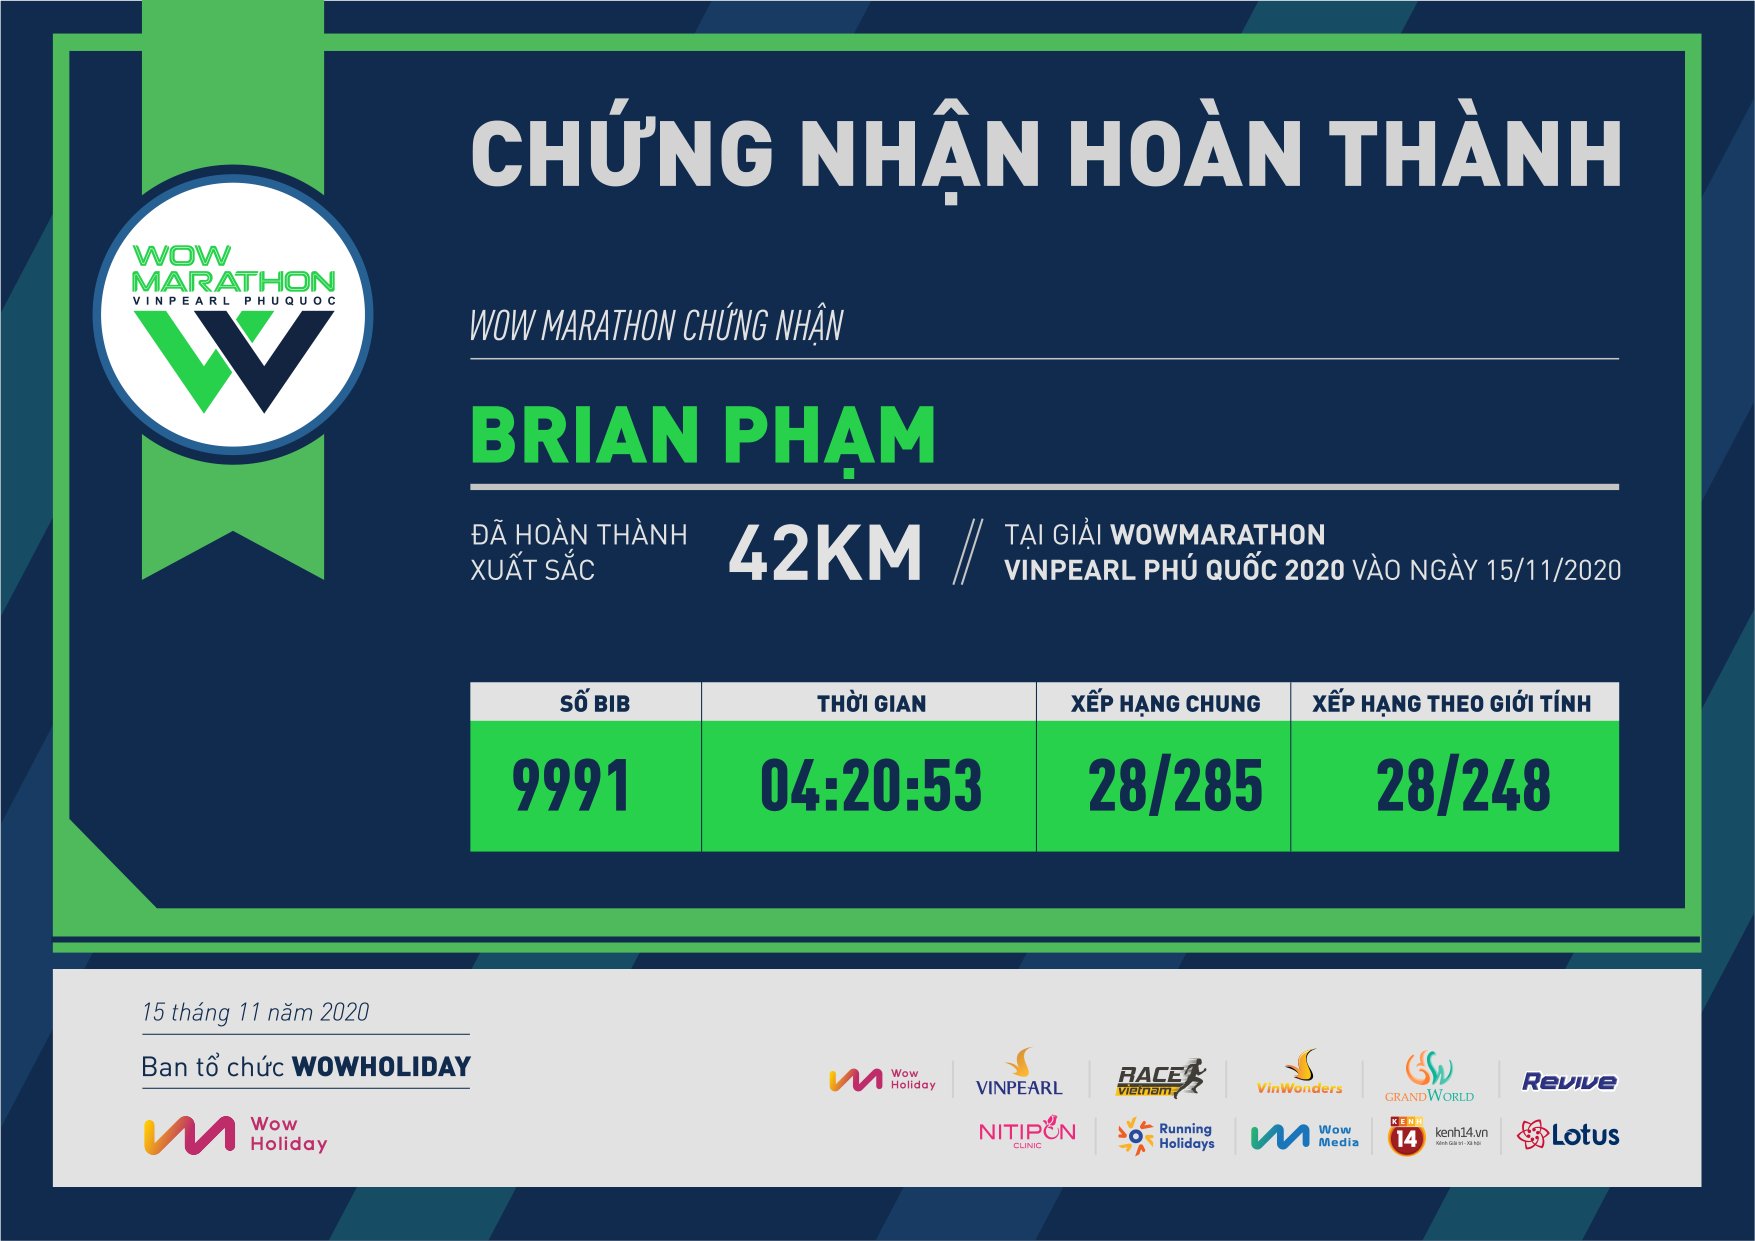 9991 - Brian Phạm